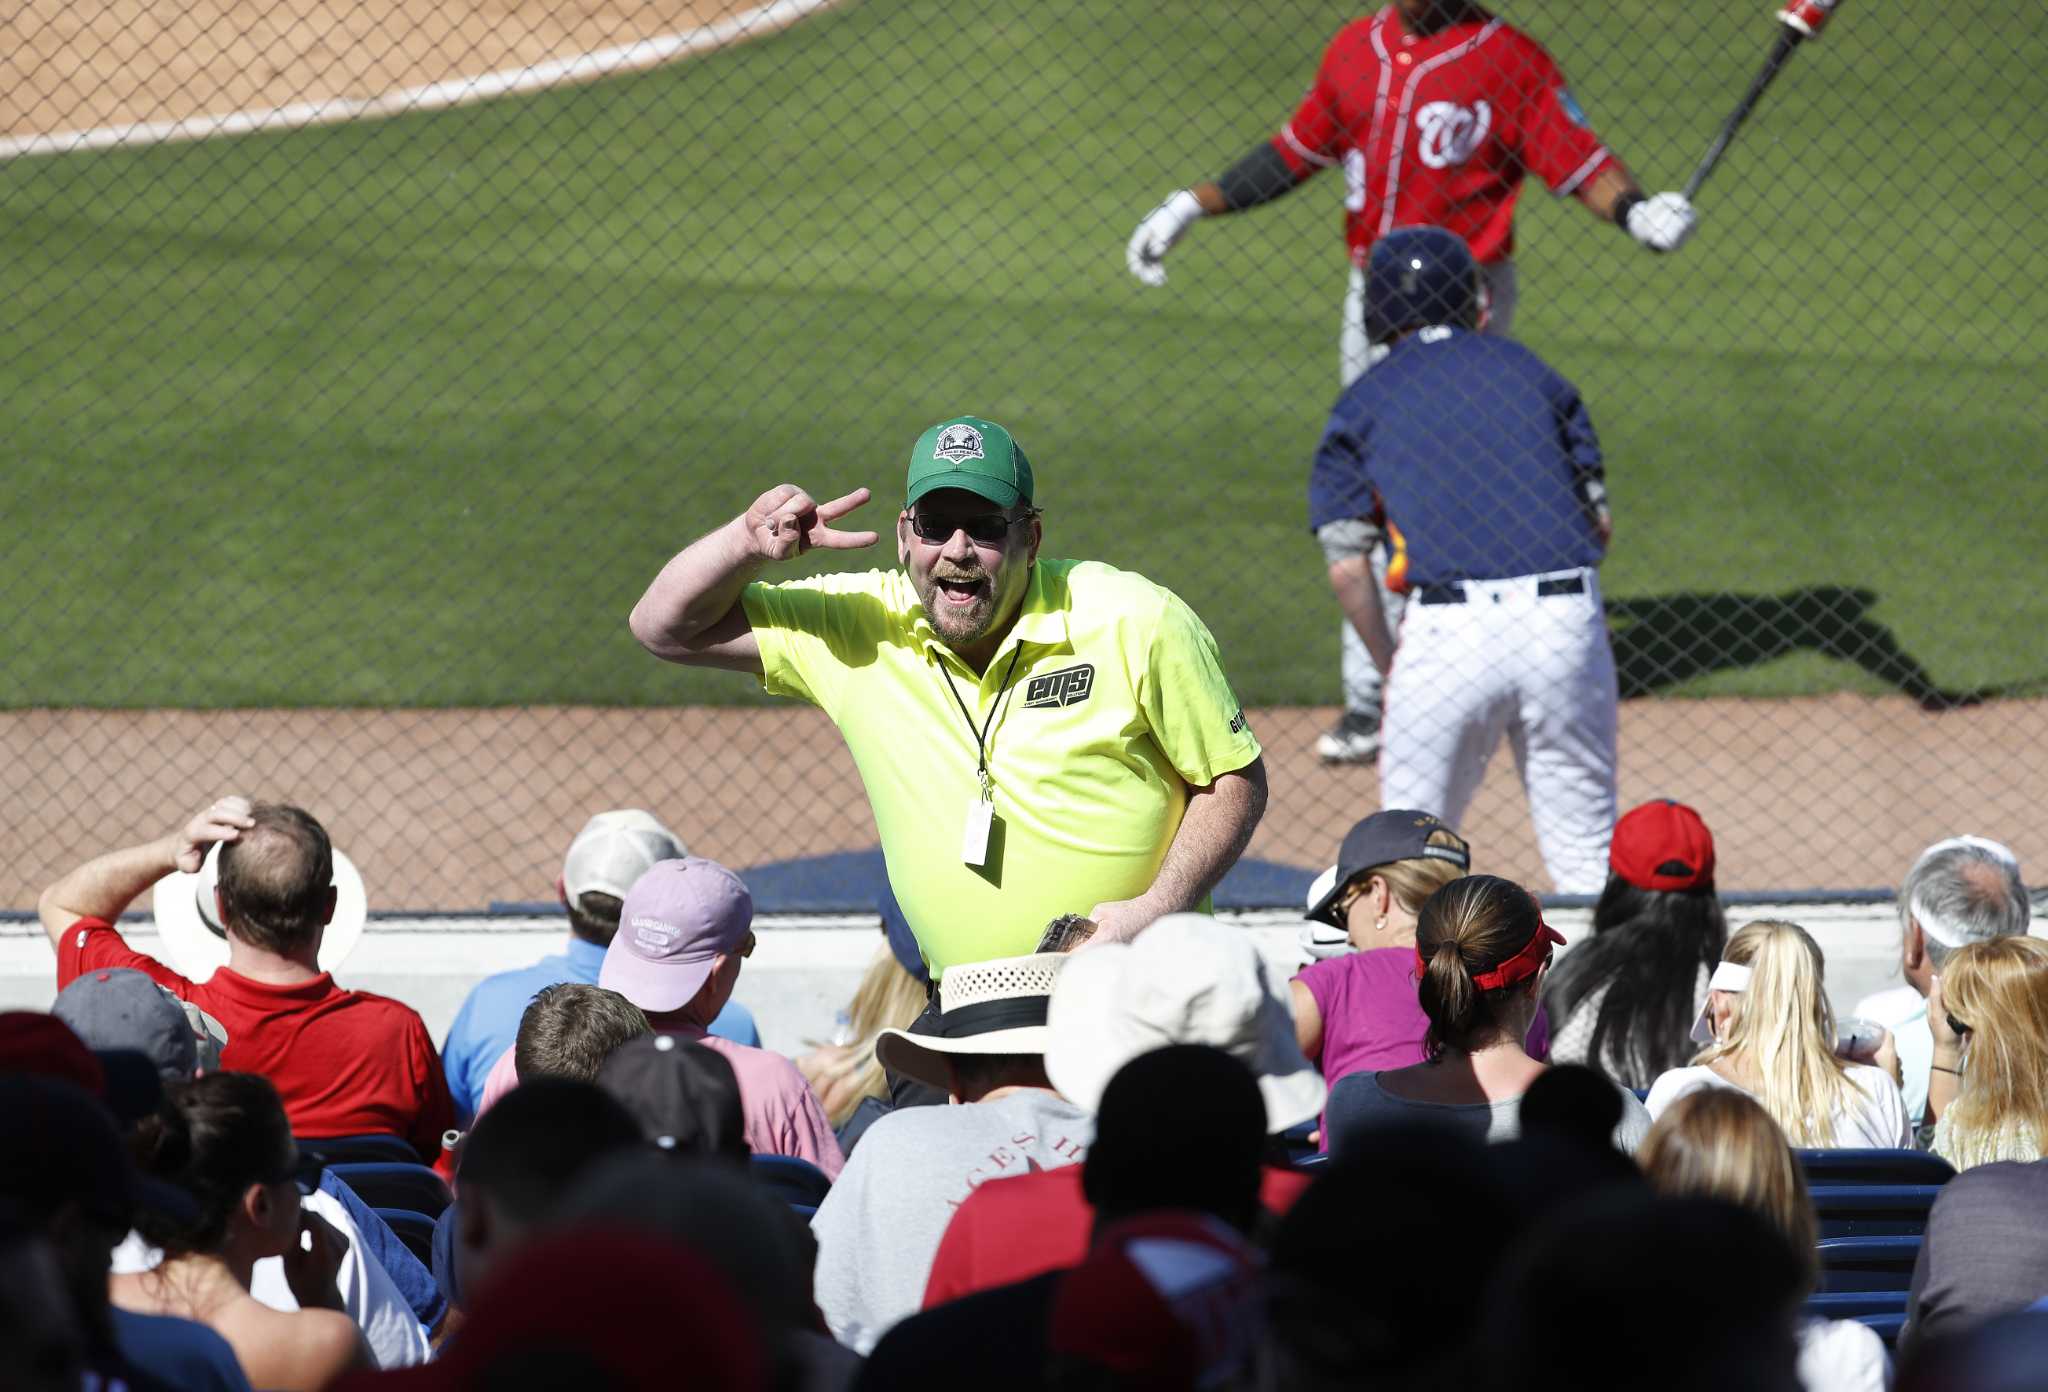 Beer vendor brews up fun at Astros' spring ballpark